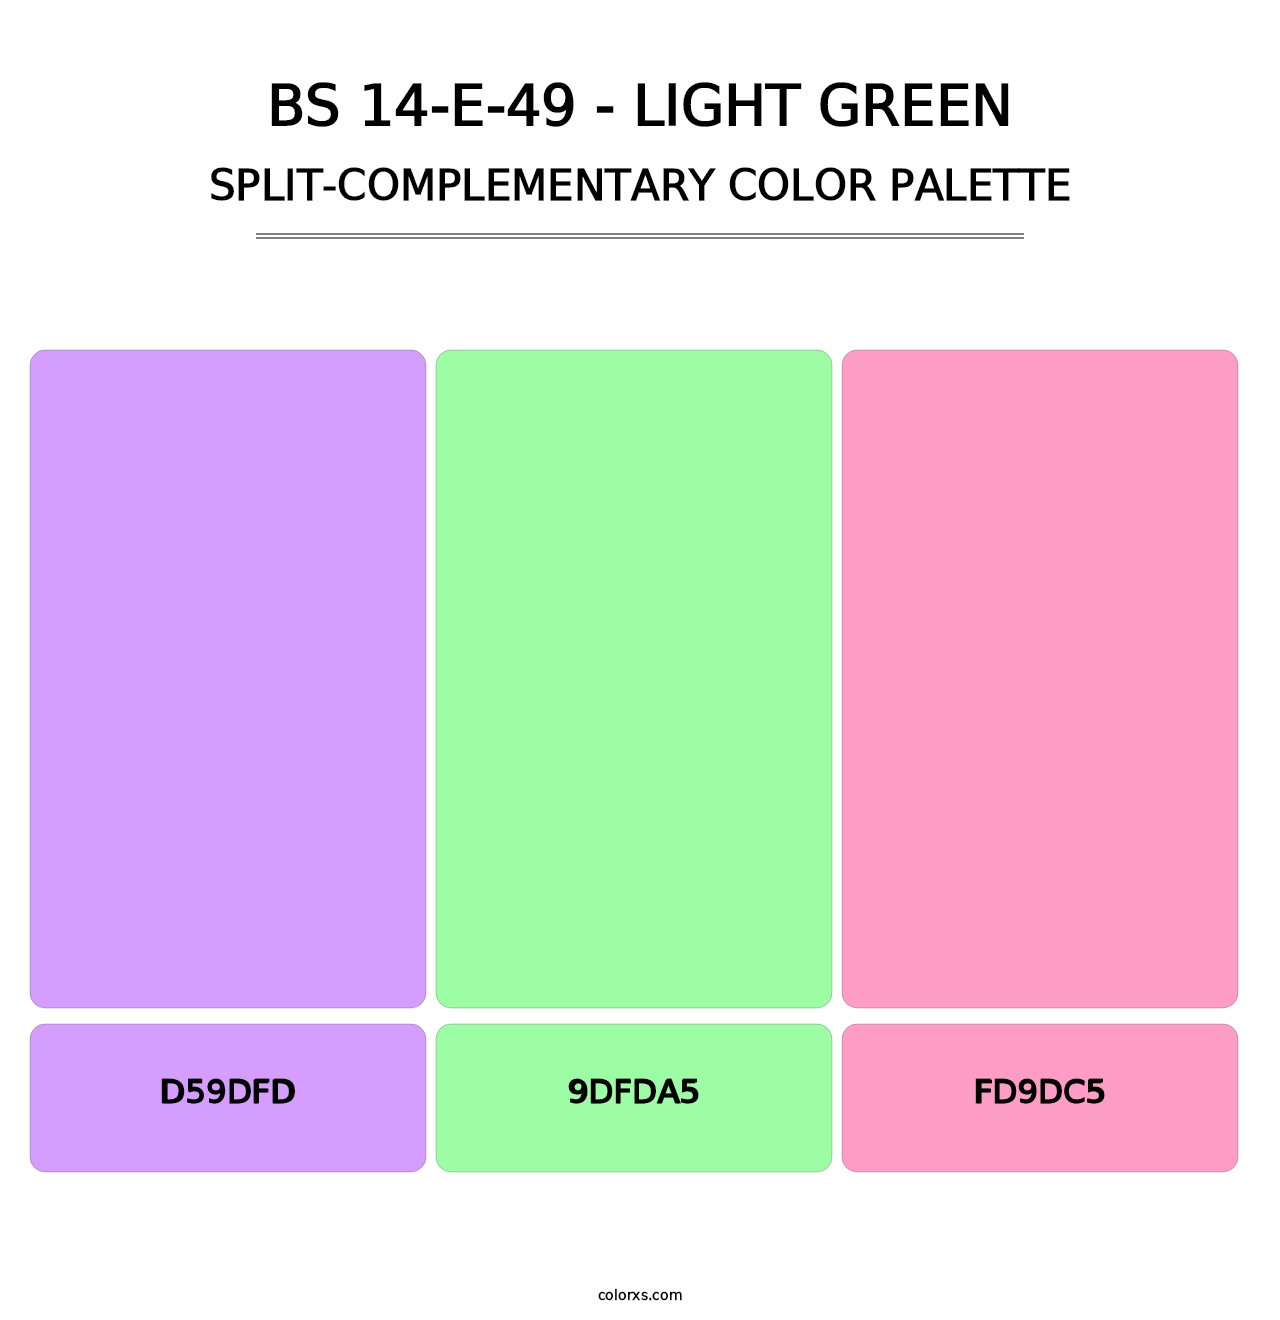 BS 14-E-49 - Light Green - Split-Complementary Color Palette